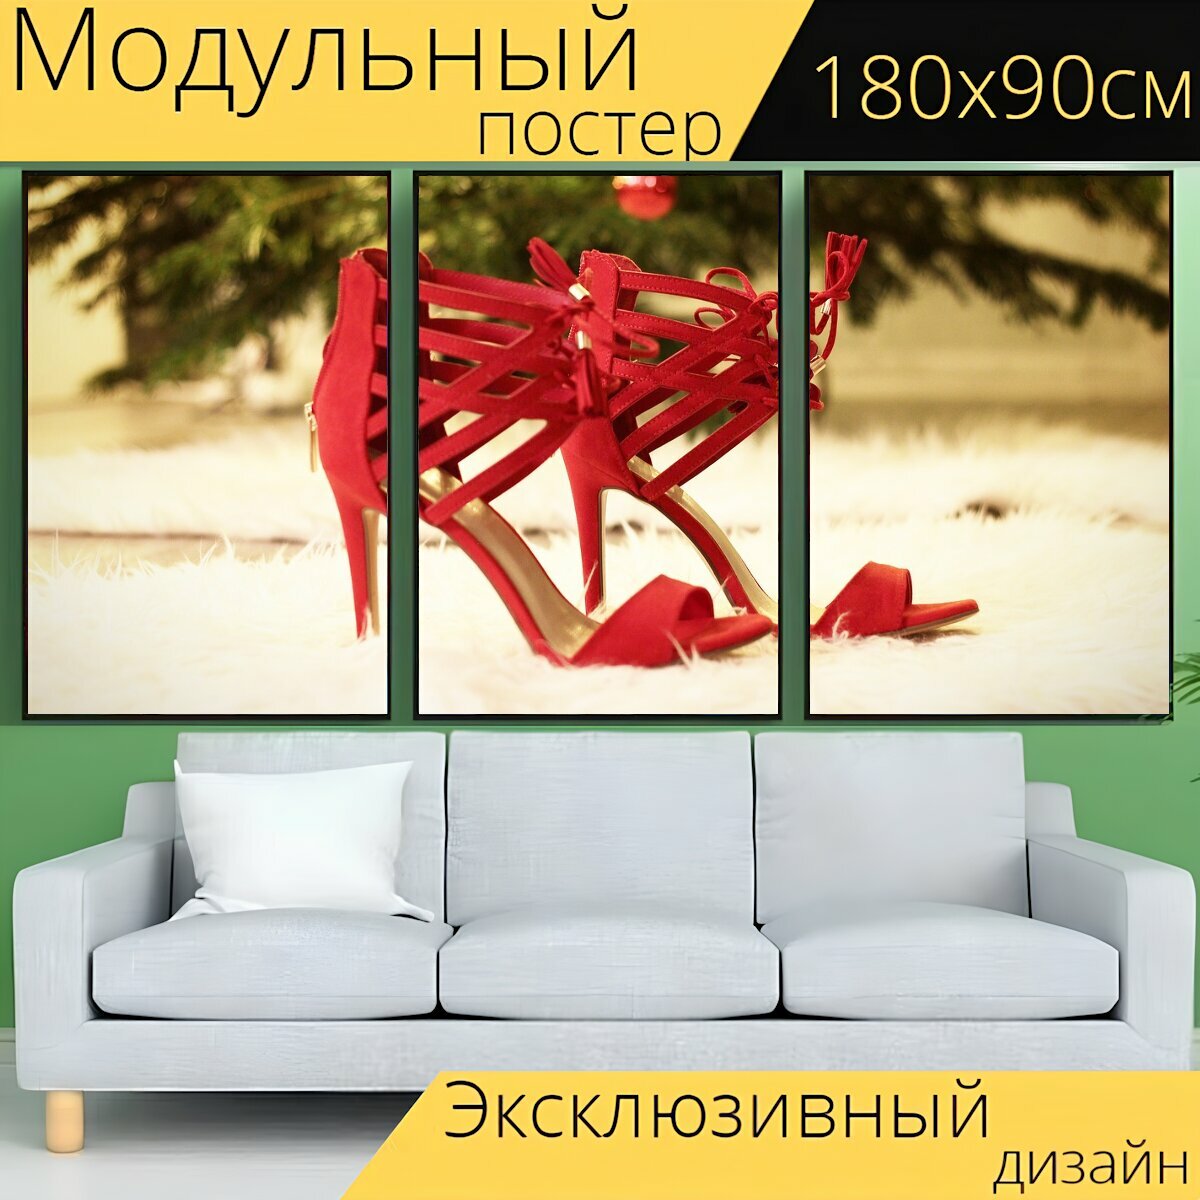 Модульный постер "Красный, высокие каблуки, обувь" 180 x 90 см. для интерьера